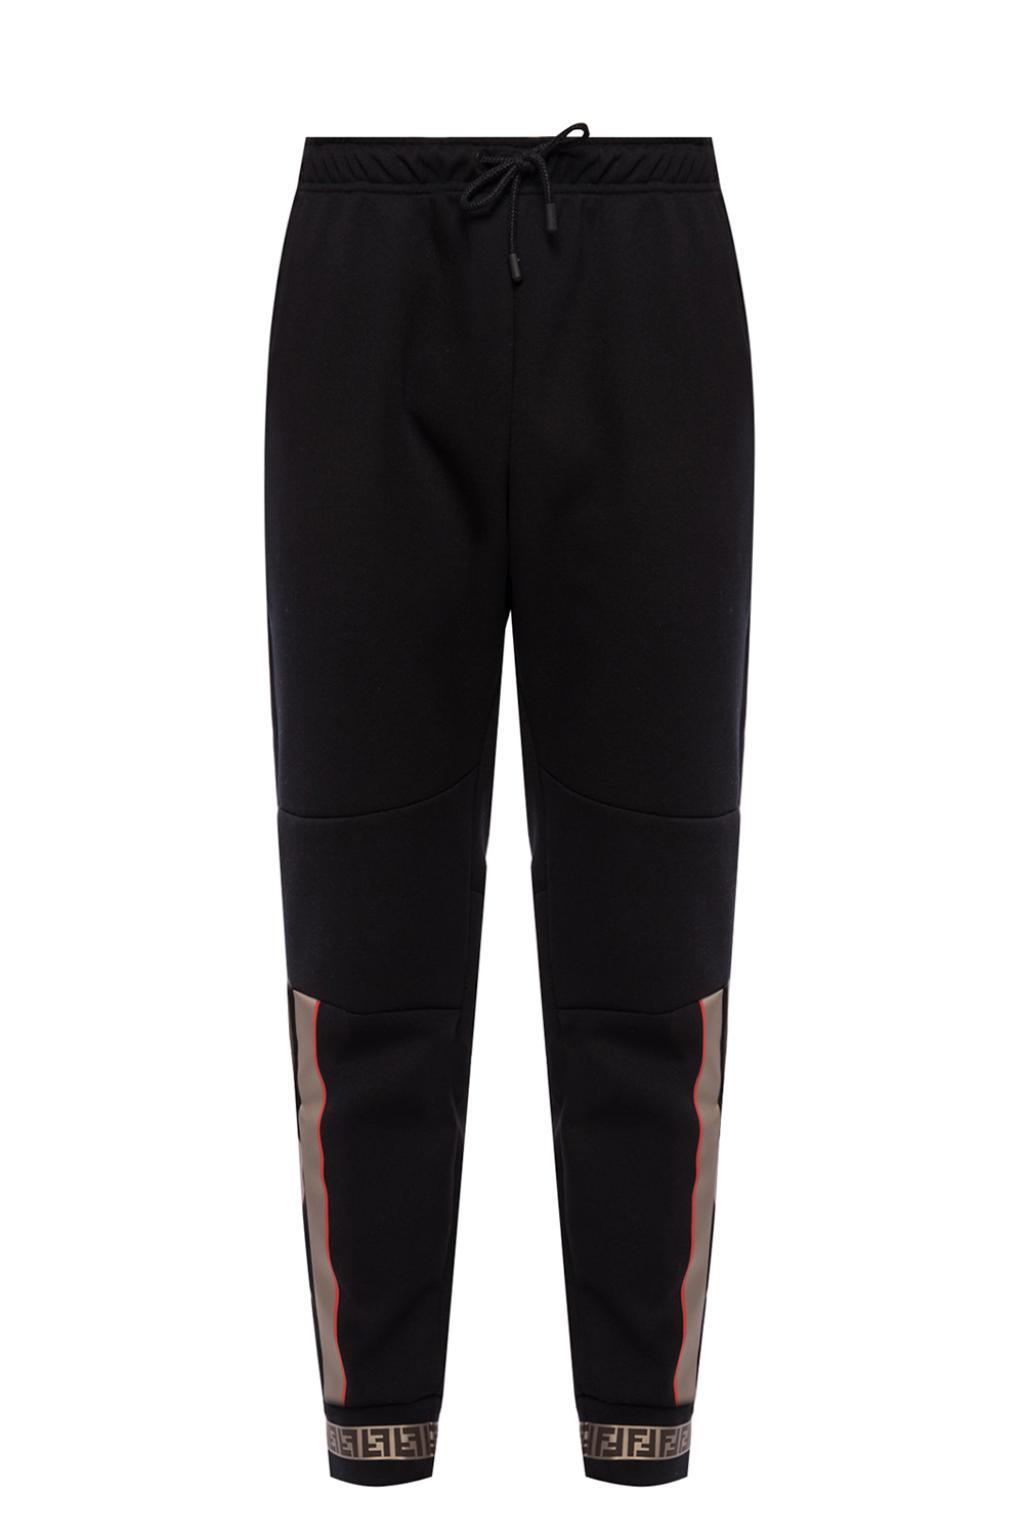 Fendi Printed Sweatpants in Black for Men - Lyst